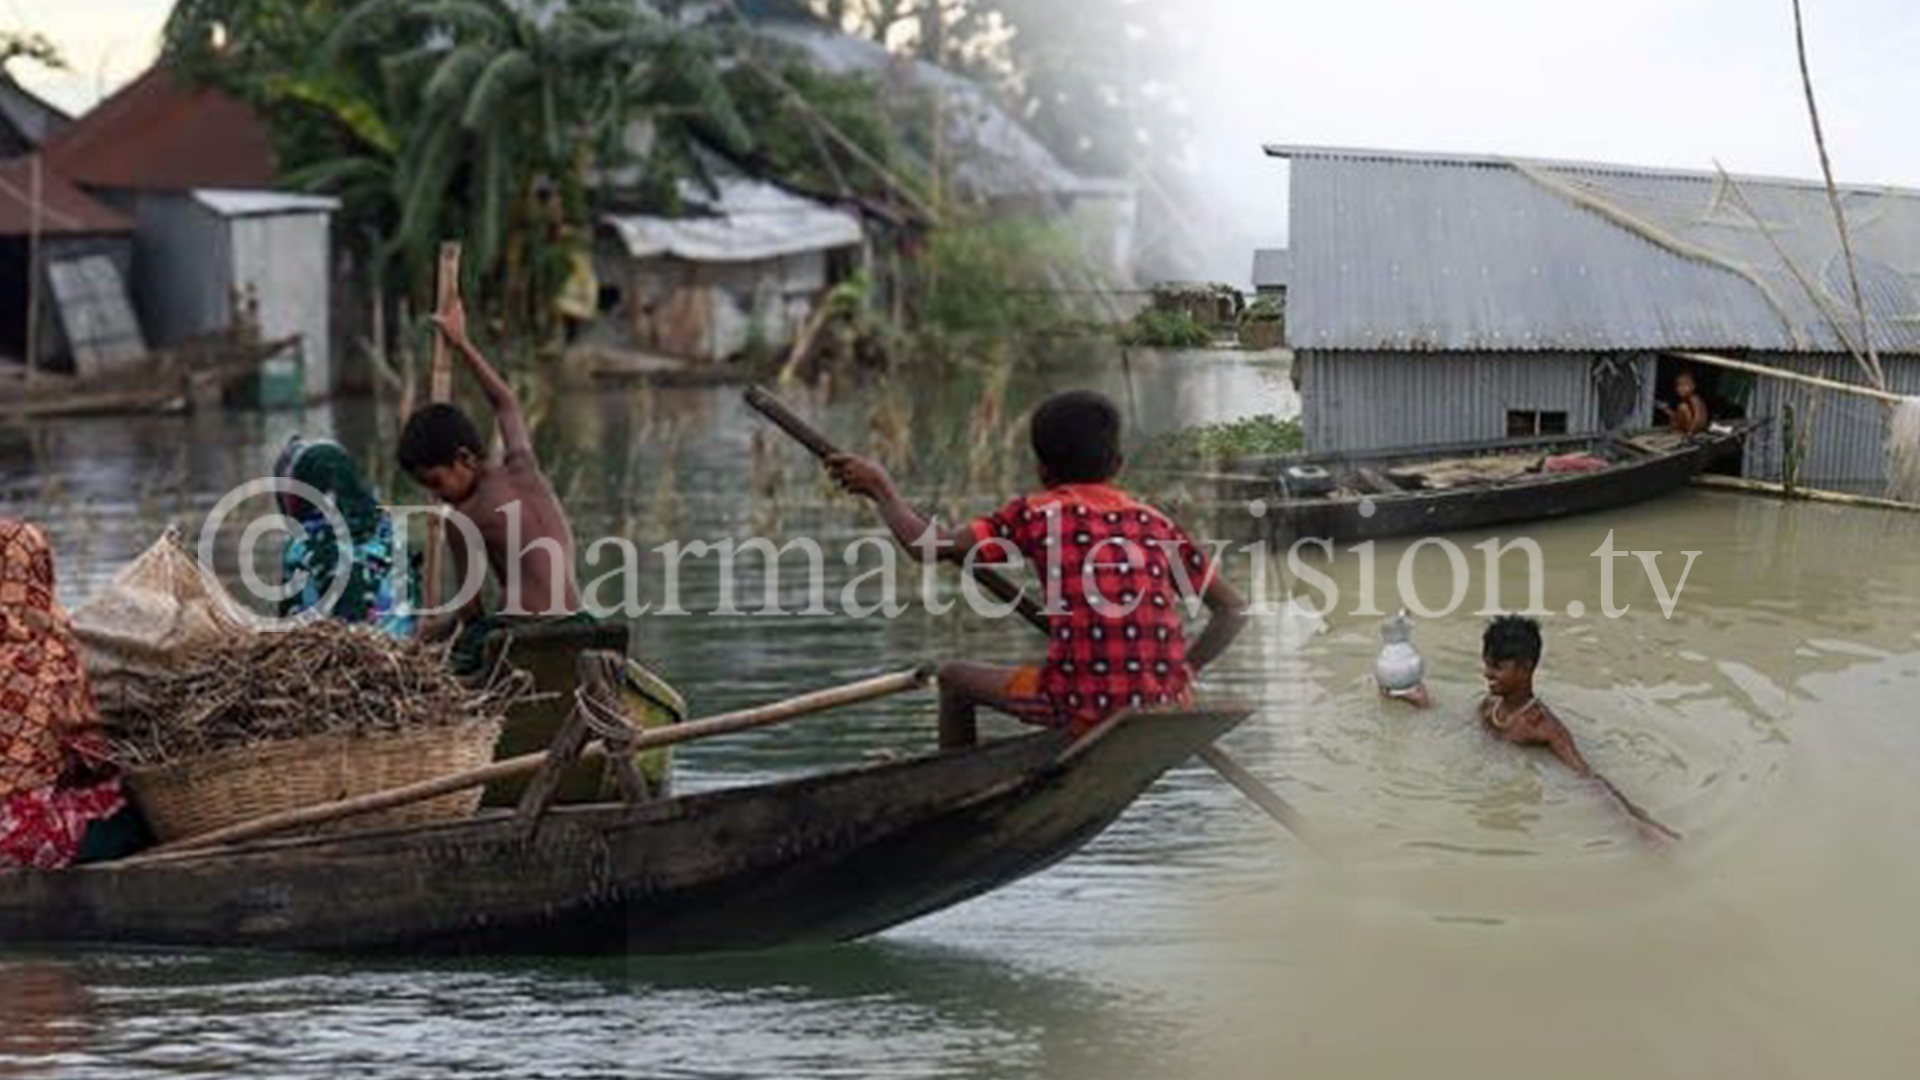 Bangladesh,India and Nepal warn of rising rivers as monsoon toll rises